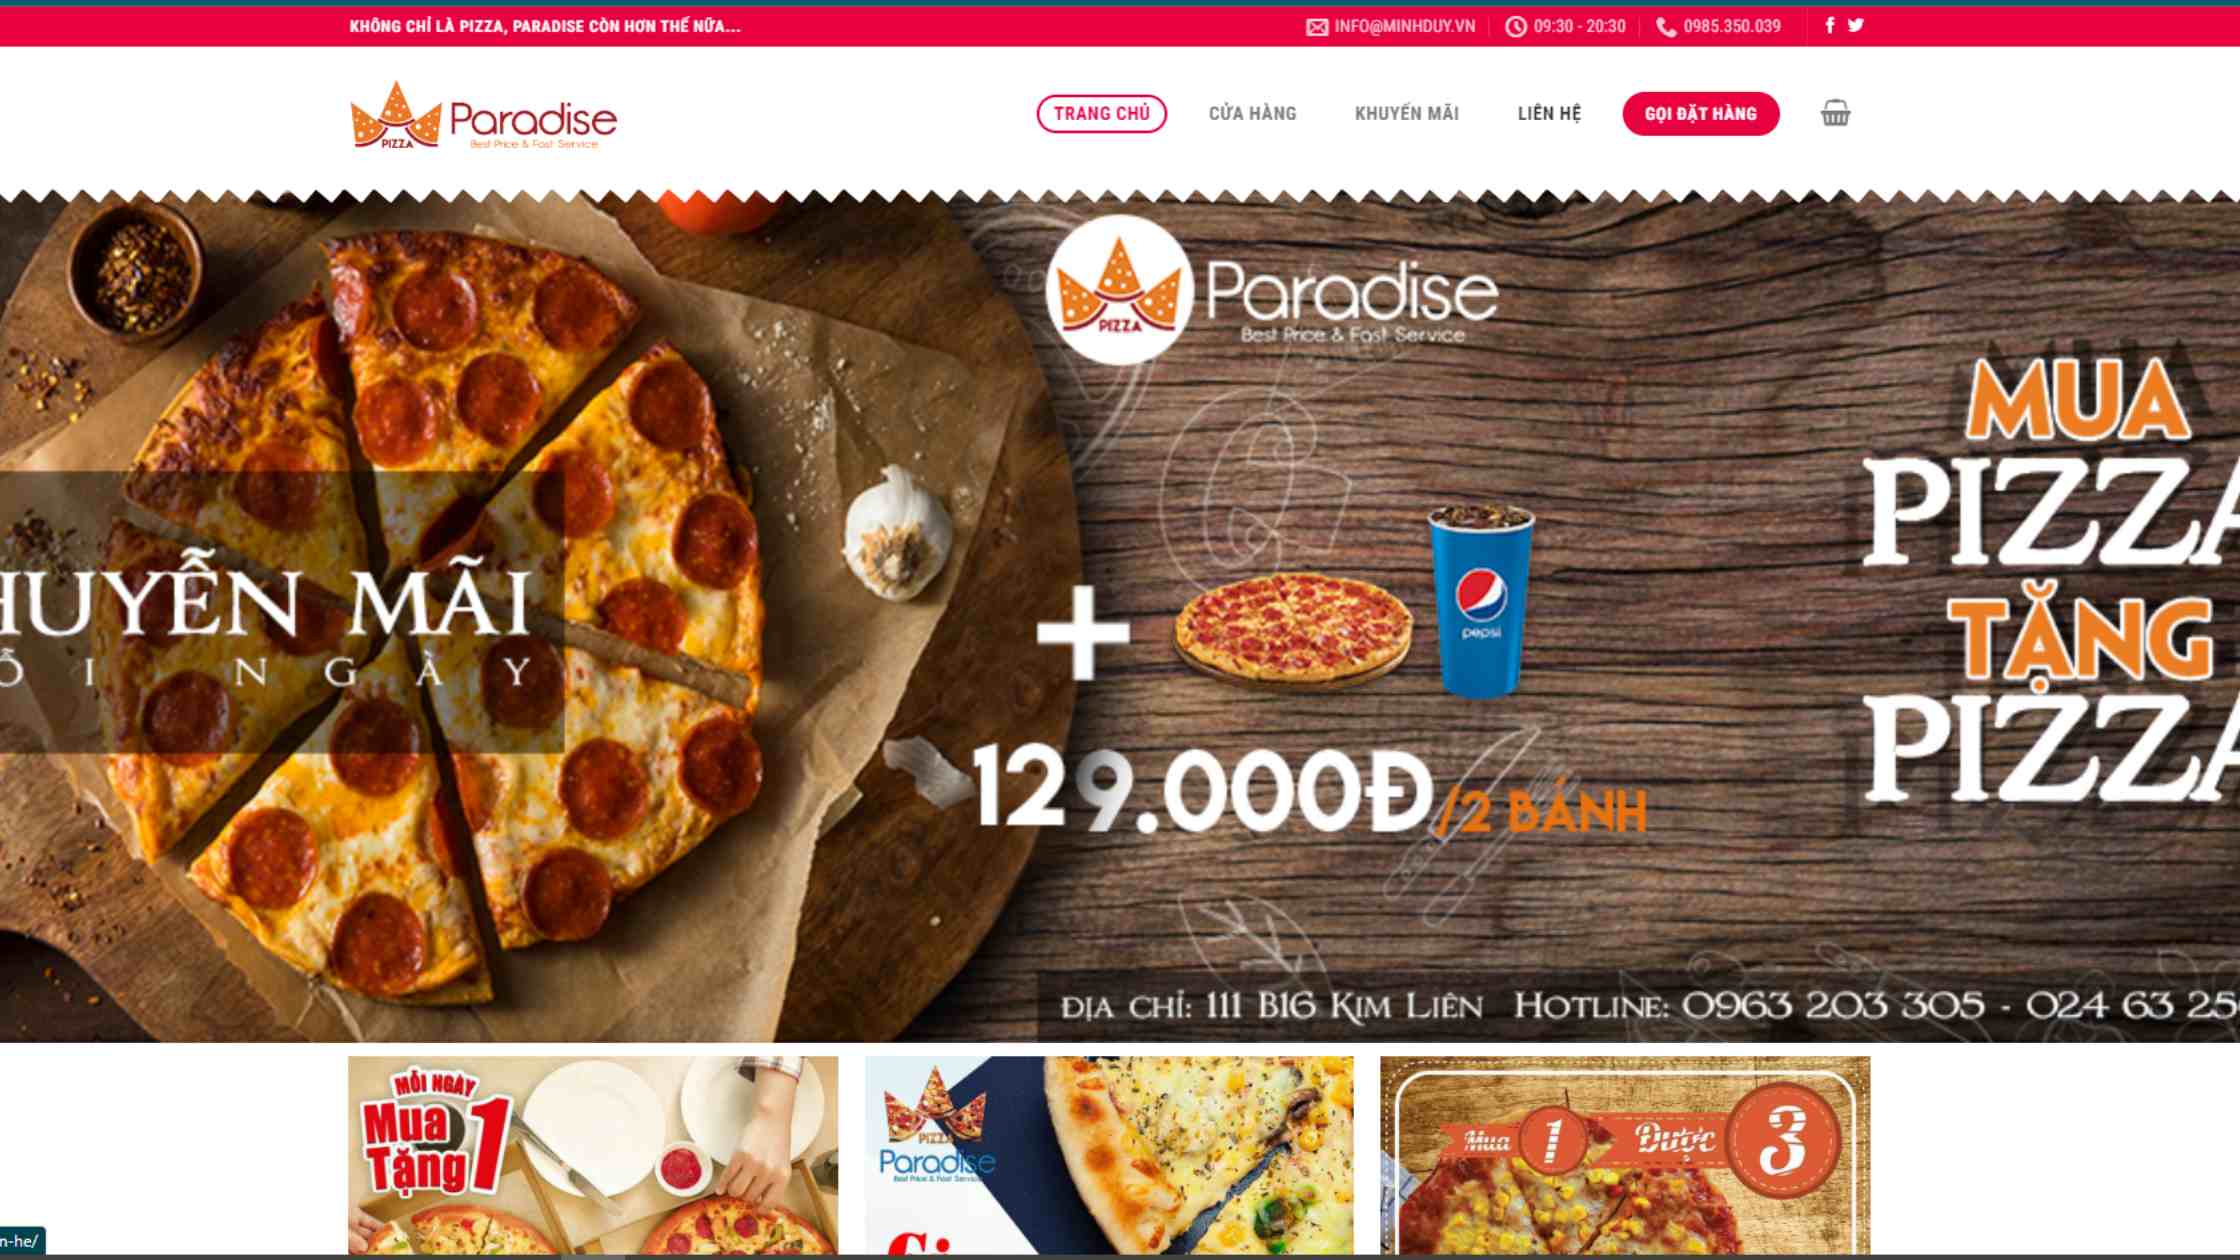 Làm chủ cuộc chơi với thiết kế website kinh doanh pizza